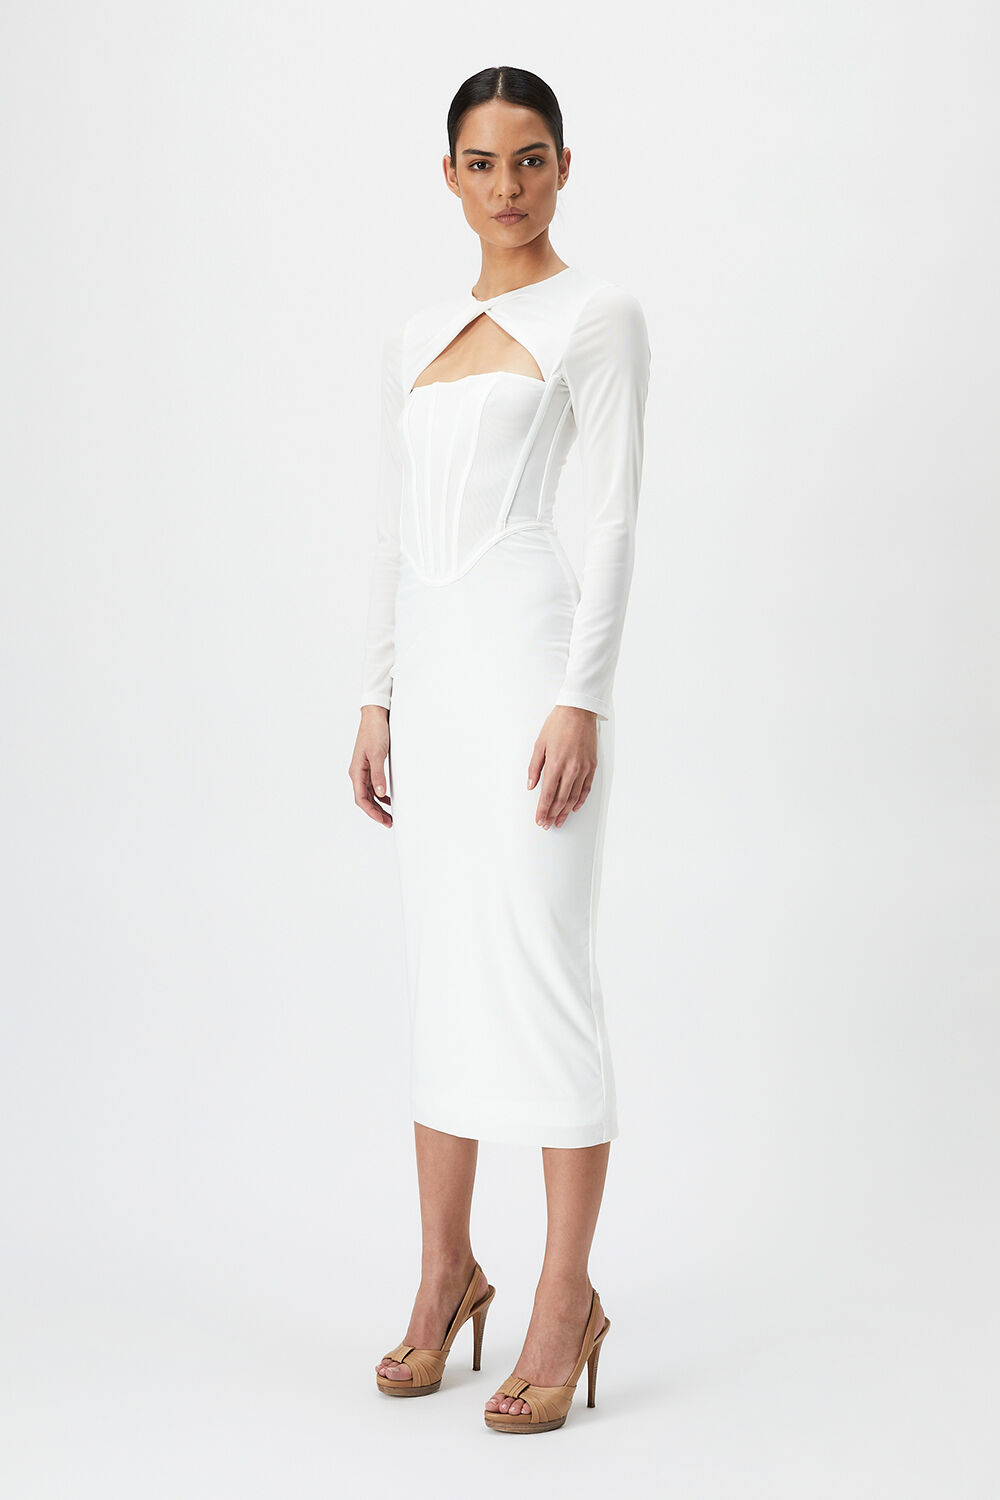 RAMONA CORSET MESH DRESS in colour BRIGHT WHITE